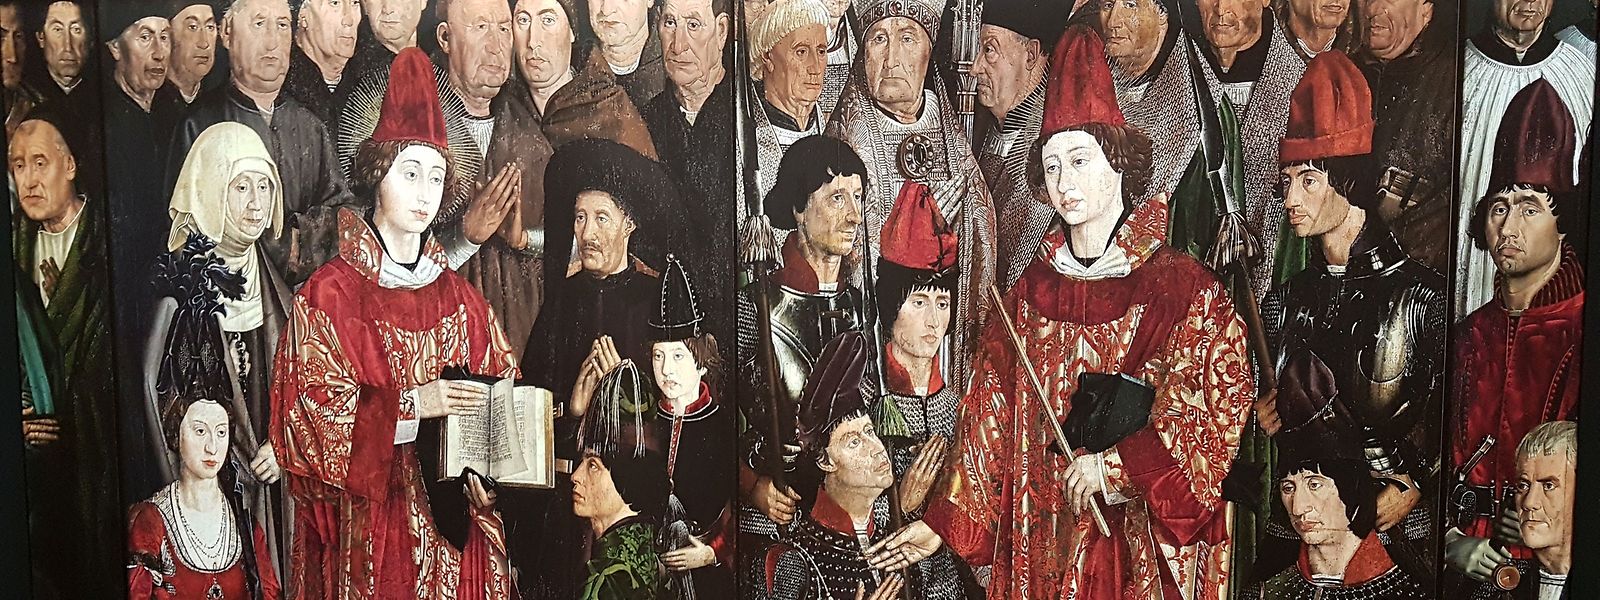 Uma reprodução dos famosos painéis de São Vicente, do pintor Nuno Gonçalves (1470-1480), acolhe os visitantes numa das salas.